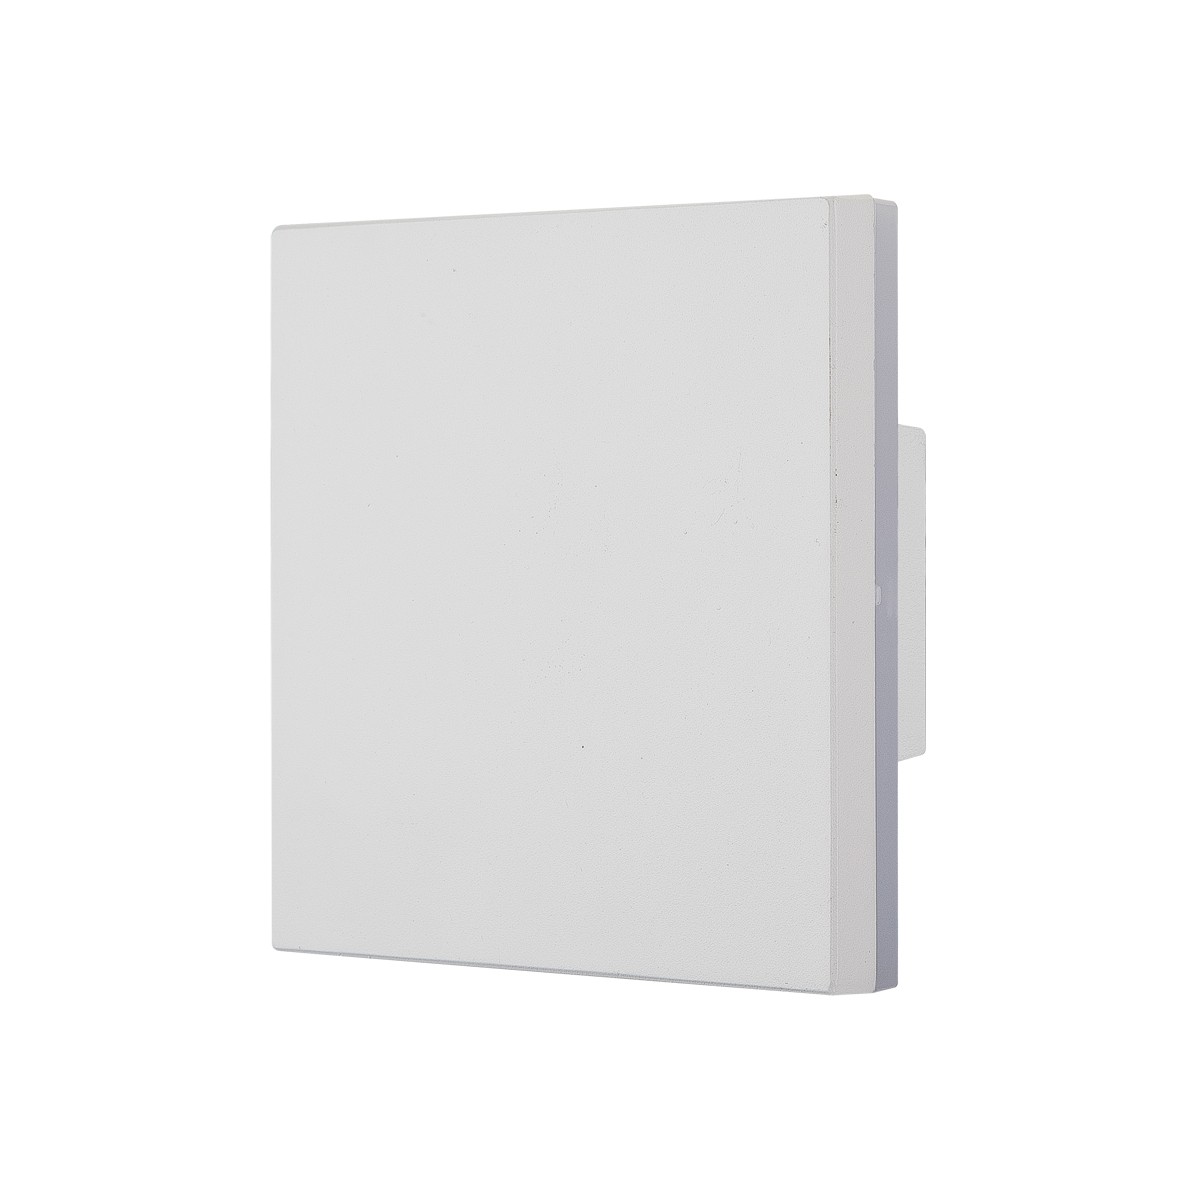 Led Φωτιστικό Αλουμινίου Τοίχου IP54 10w 3000K 630lm Λευκό Χρώμα      VK/02054/W/W